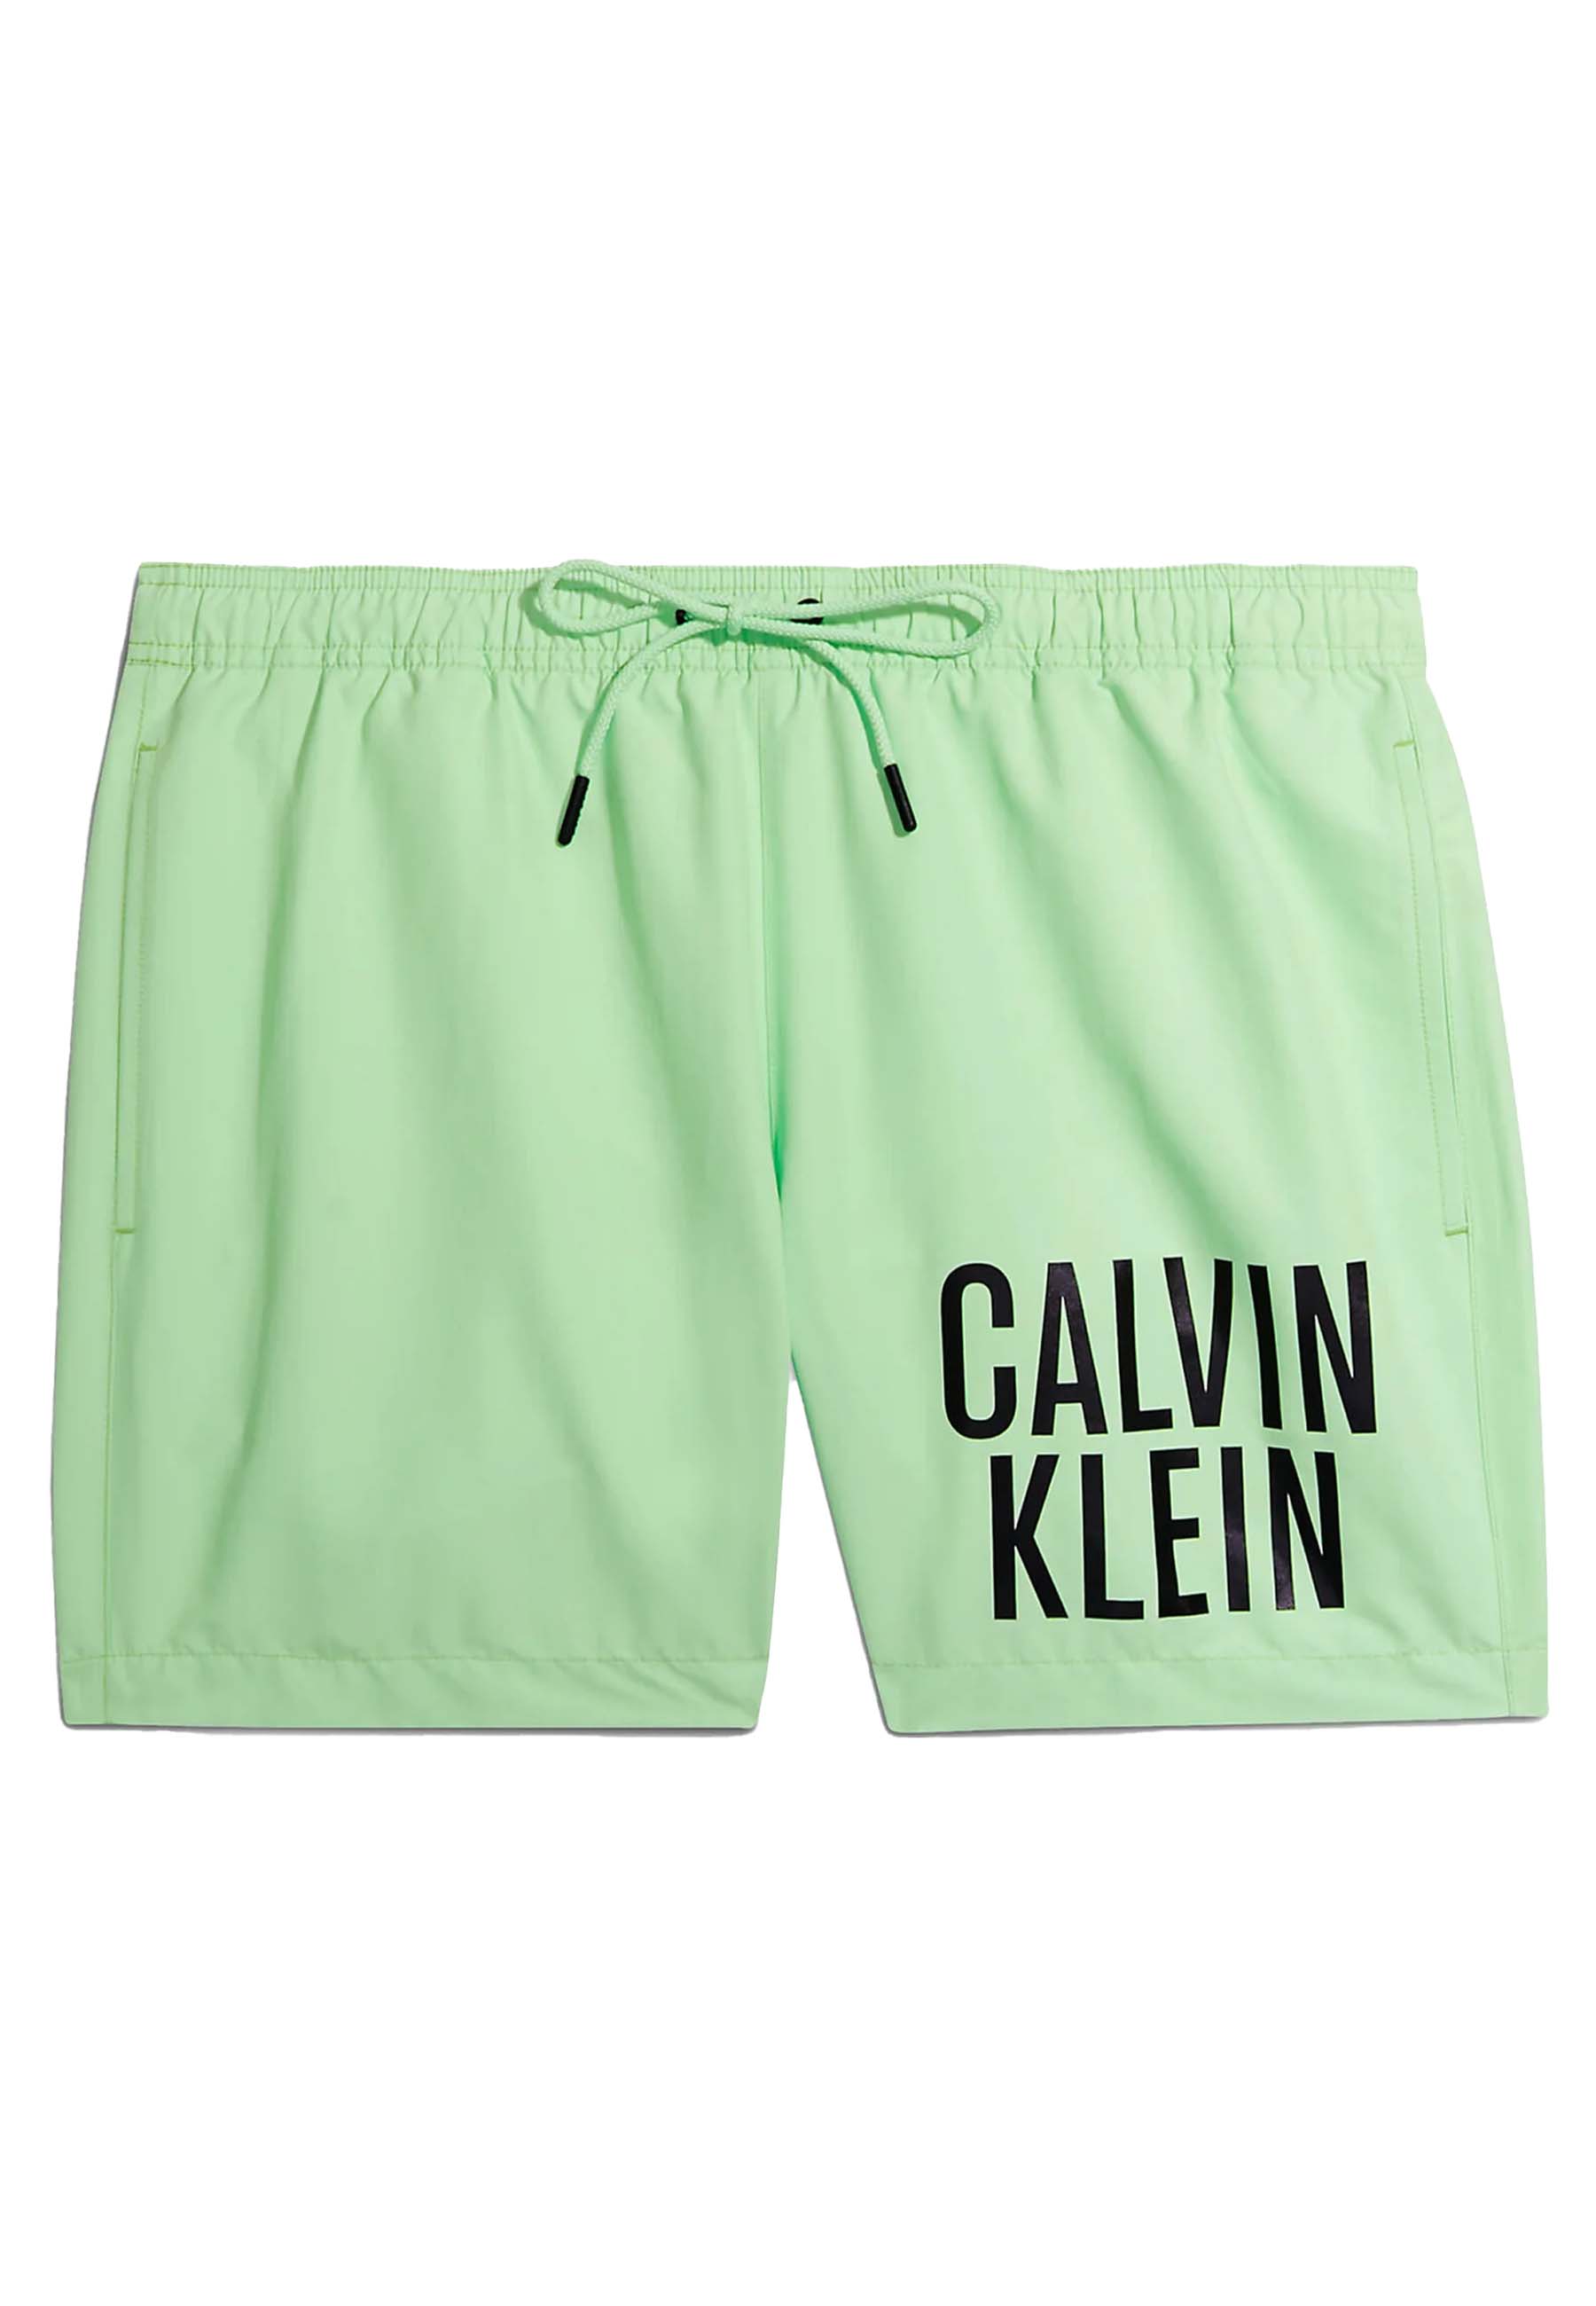 Calvin Klein Medium drawstring zwembroeken groen Heren maat M